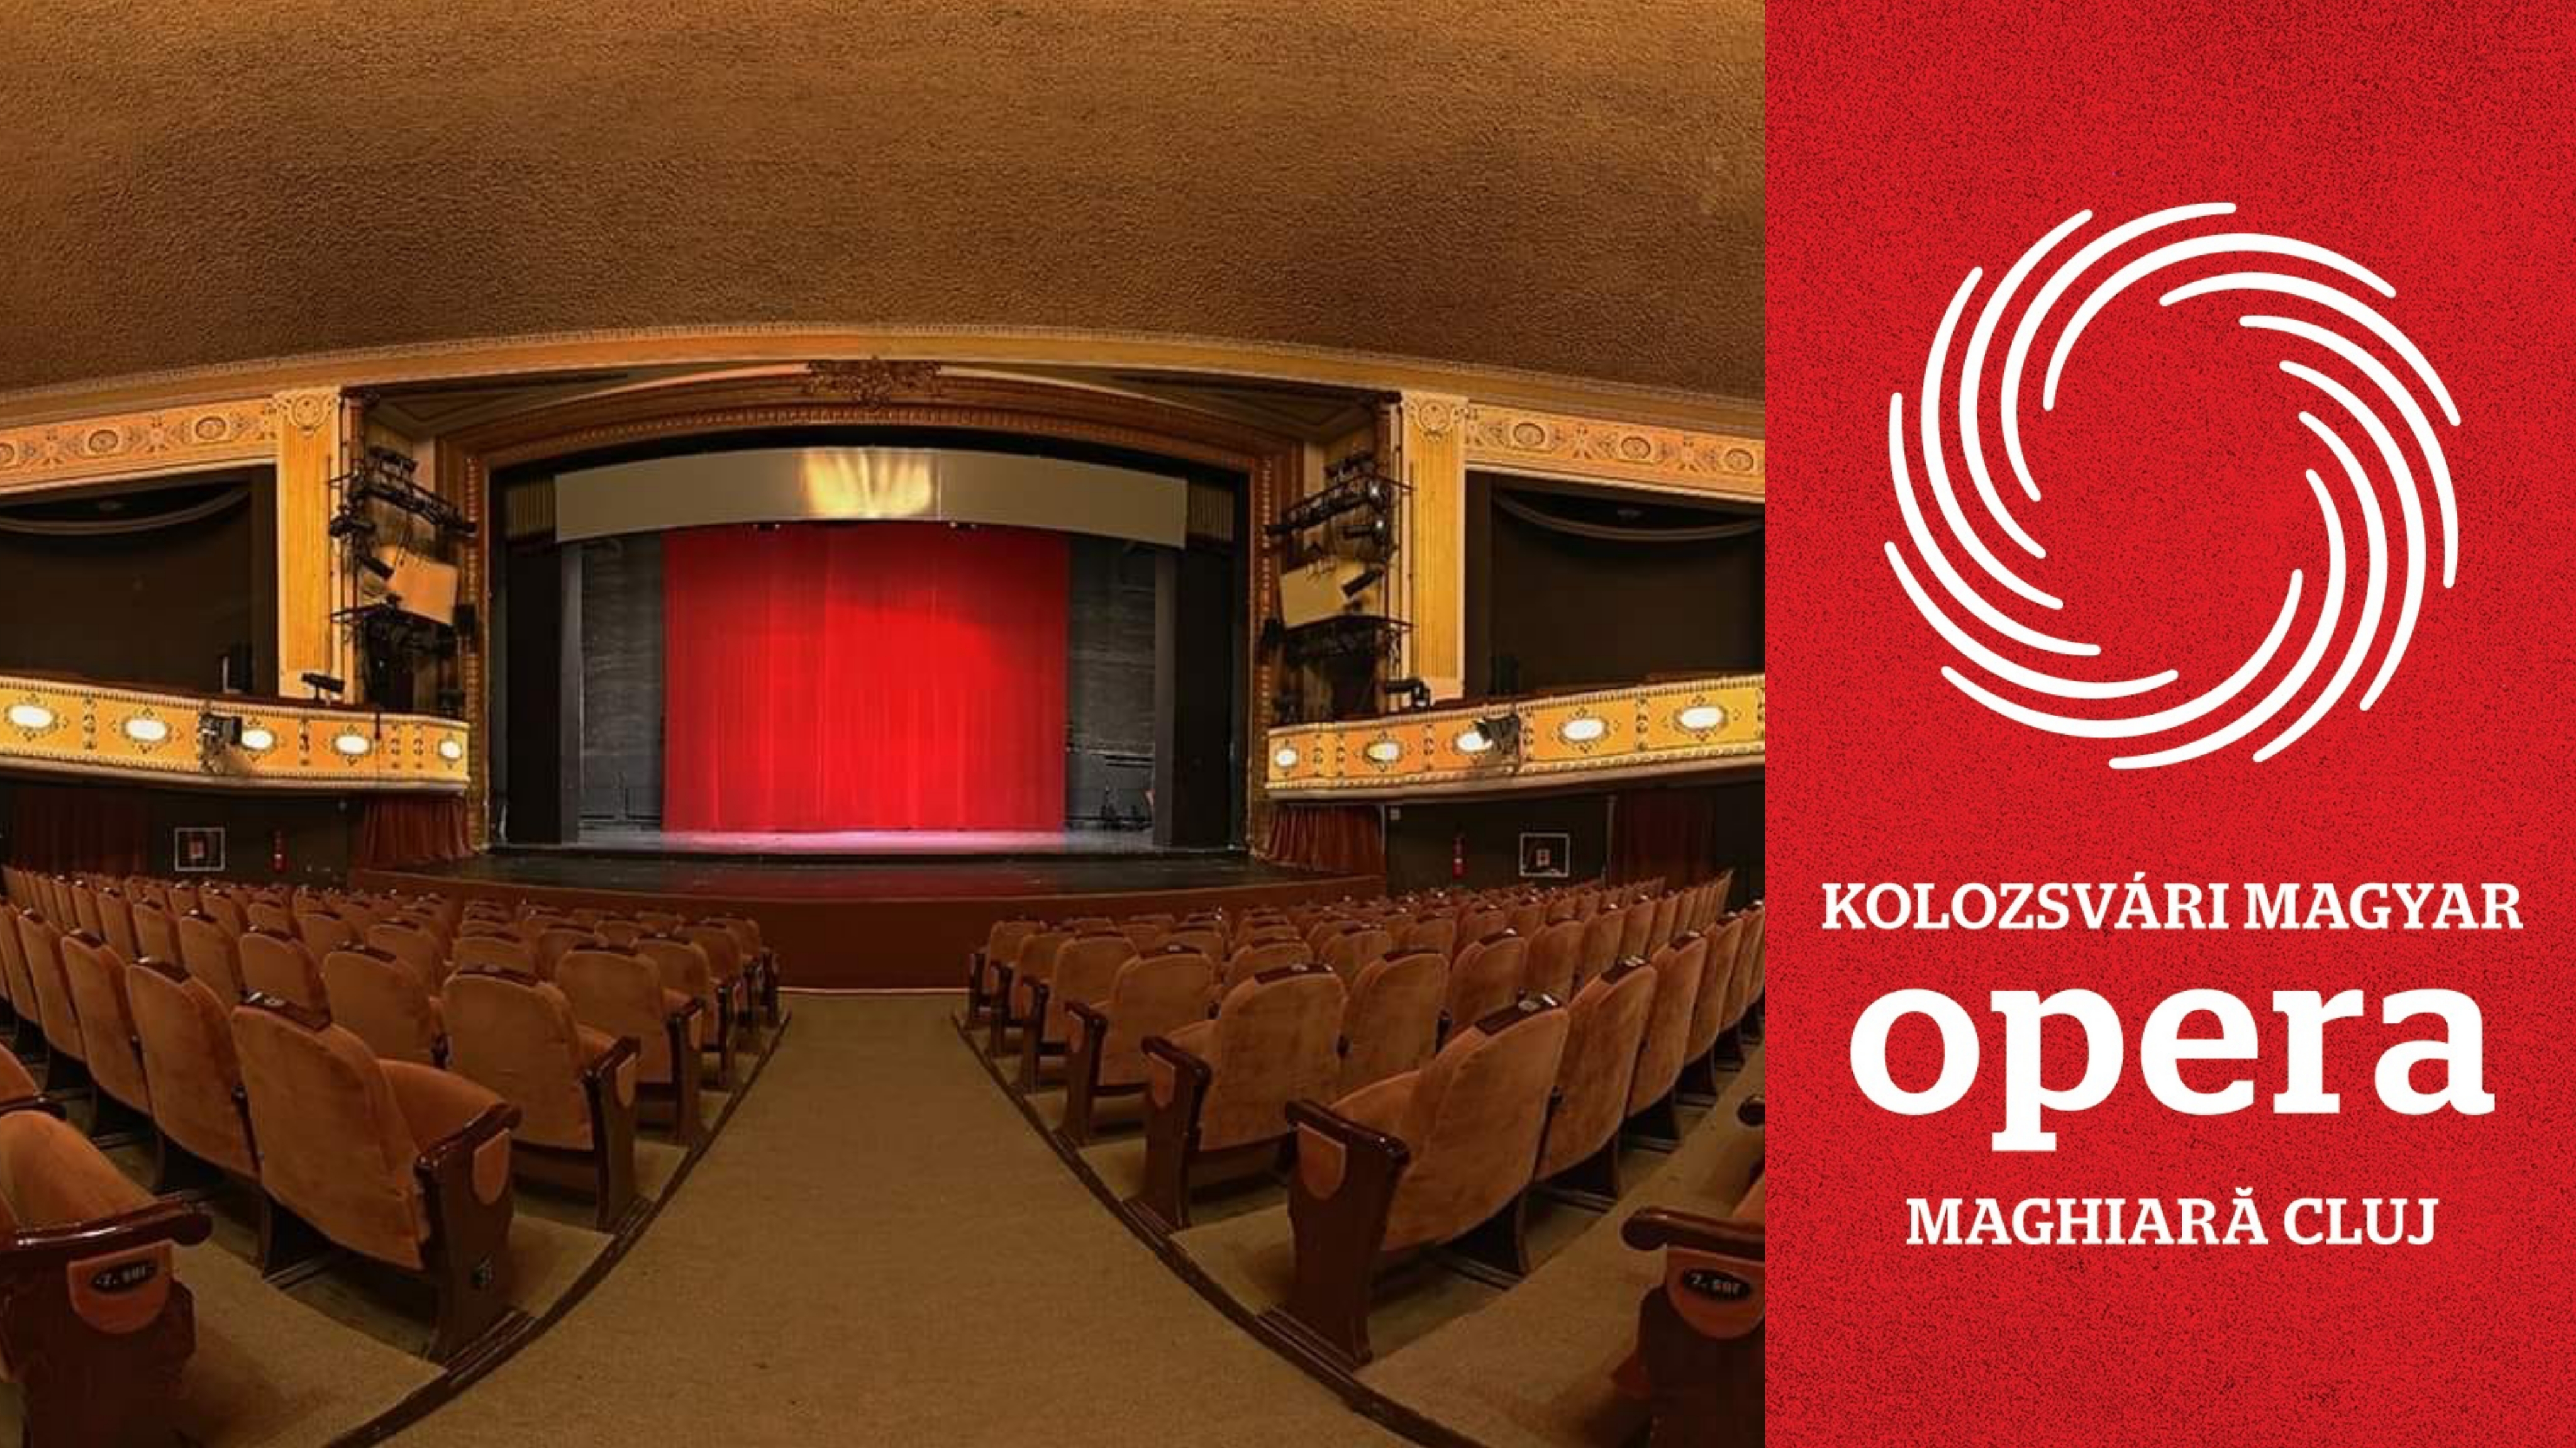 Eseménydús, színes évadot zárt a Kolozsvári Magyar Opera társulata